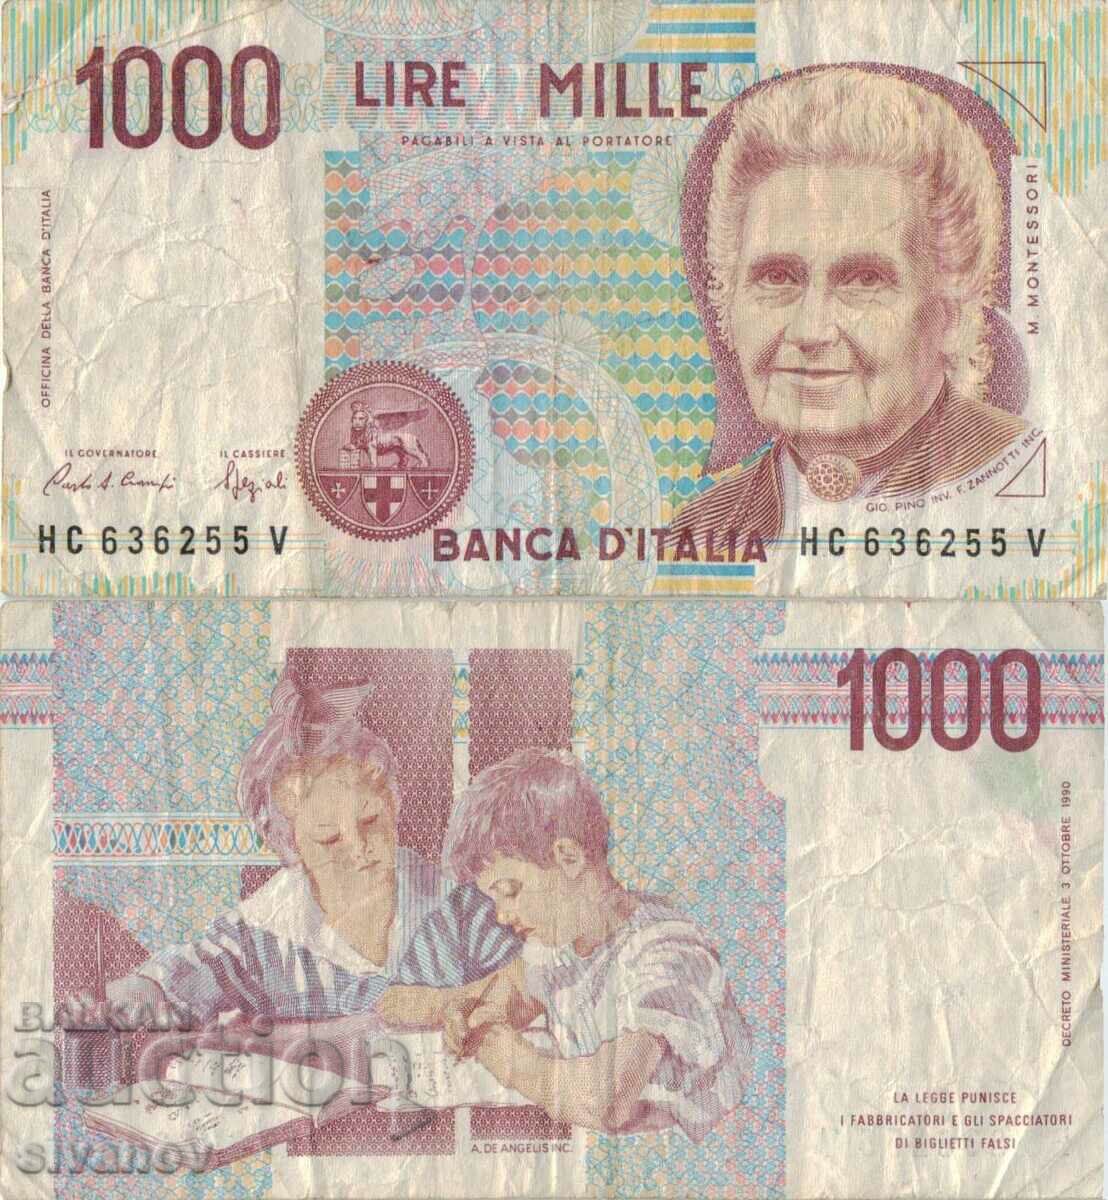 Ιταλία 1000 λιρέτες 1990 τραπεζογραμμάτιο #5178